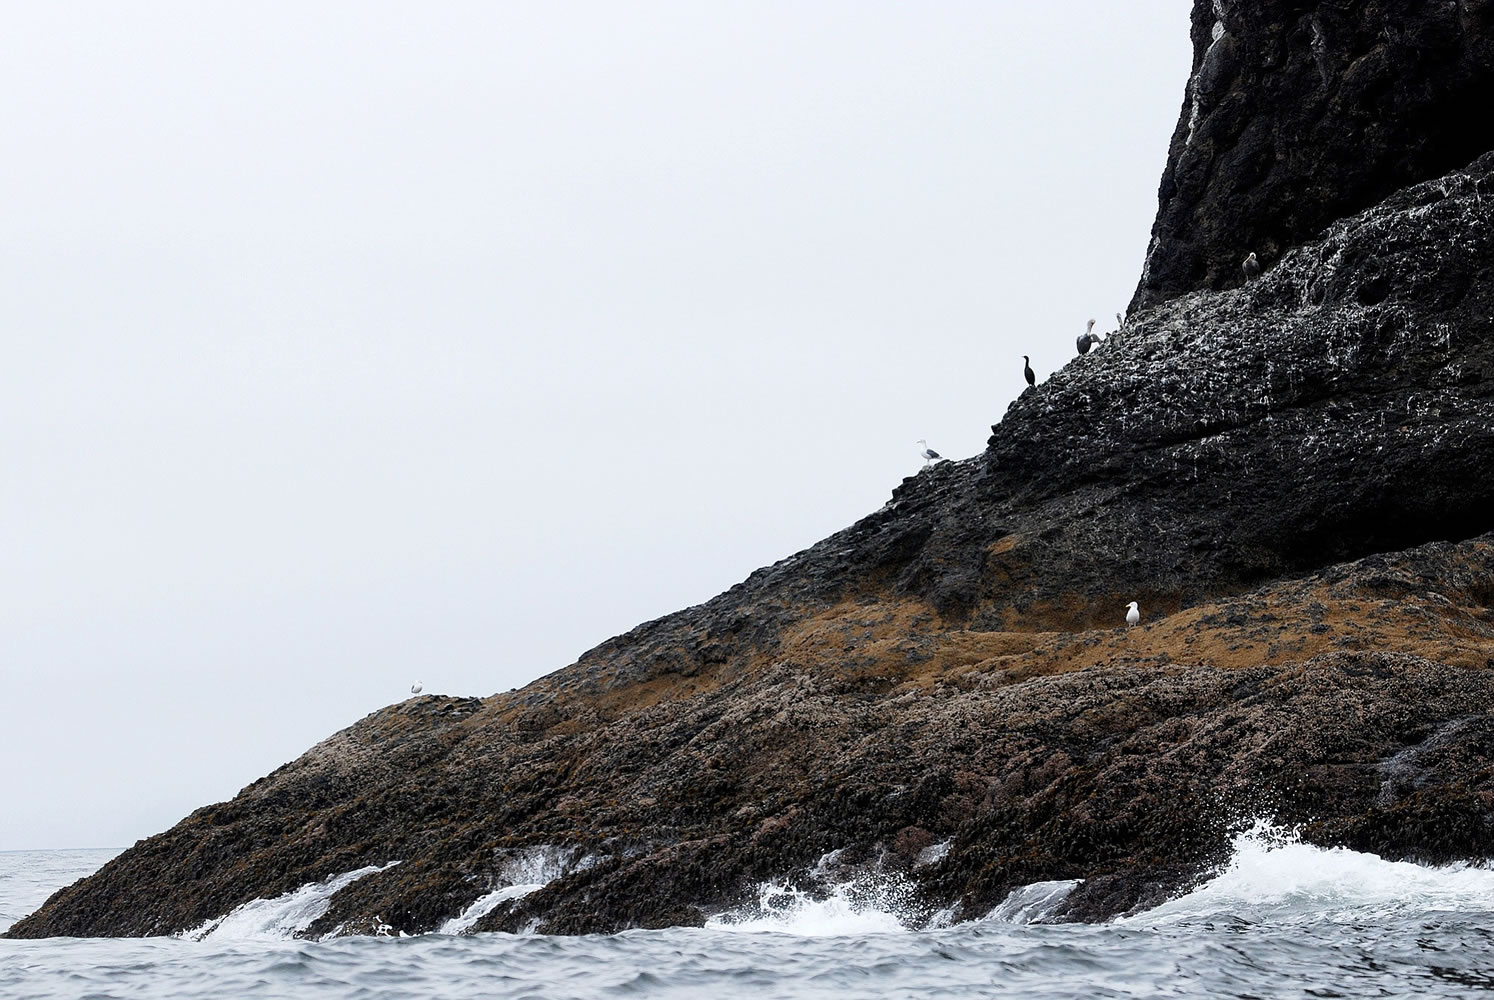 Sea birds rest on a rock off Cape Meares, Ore.